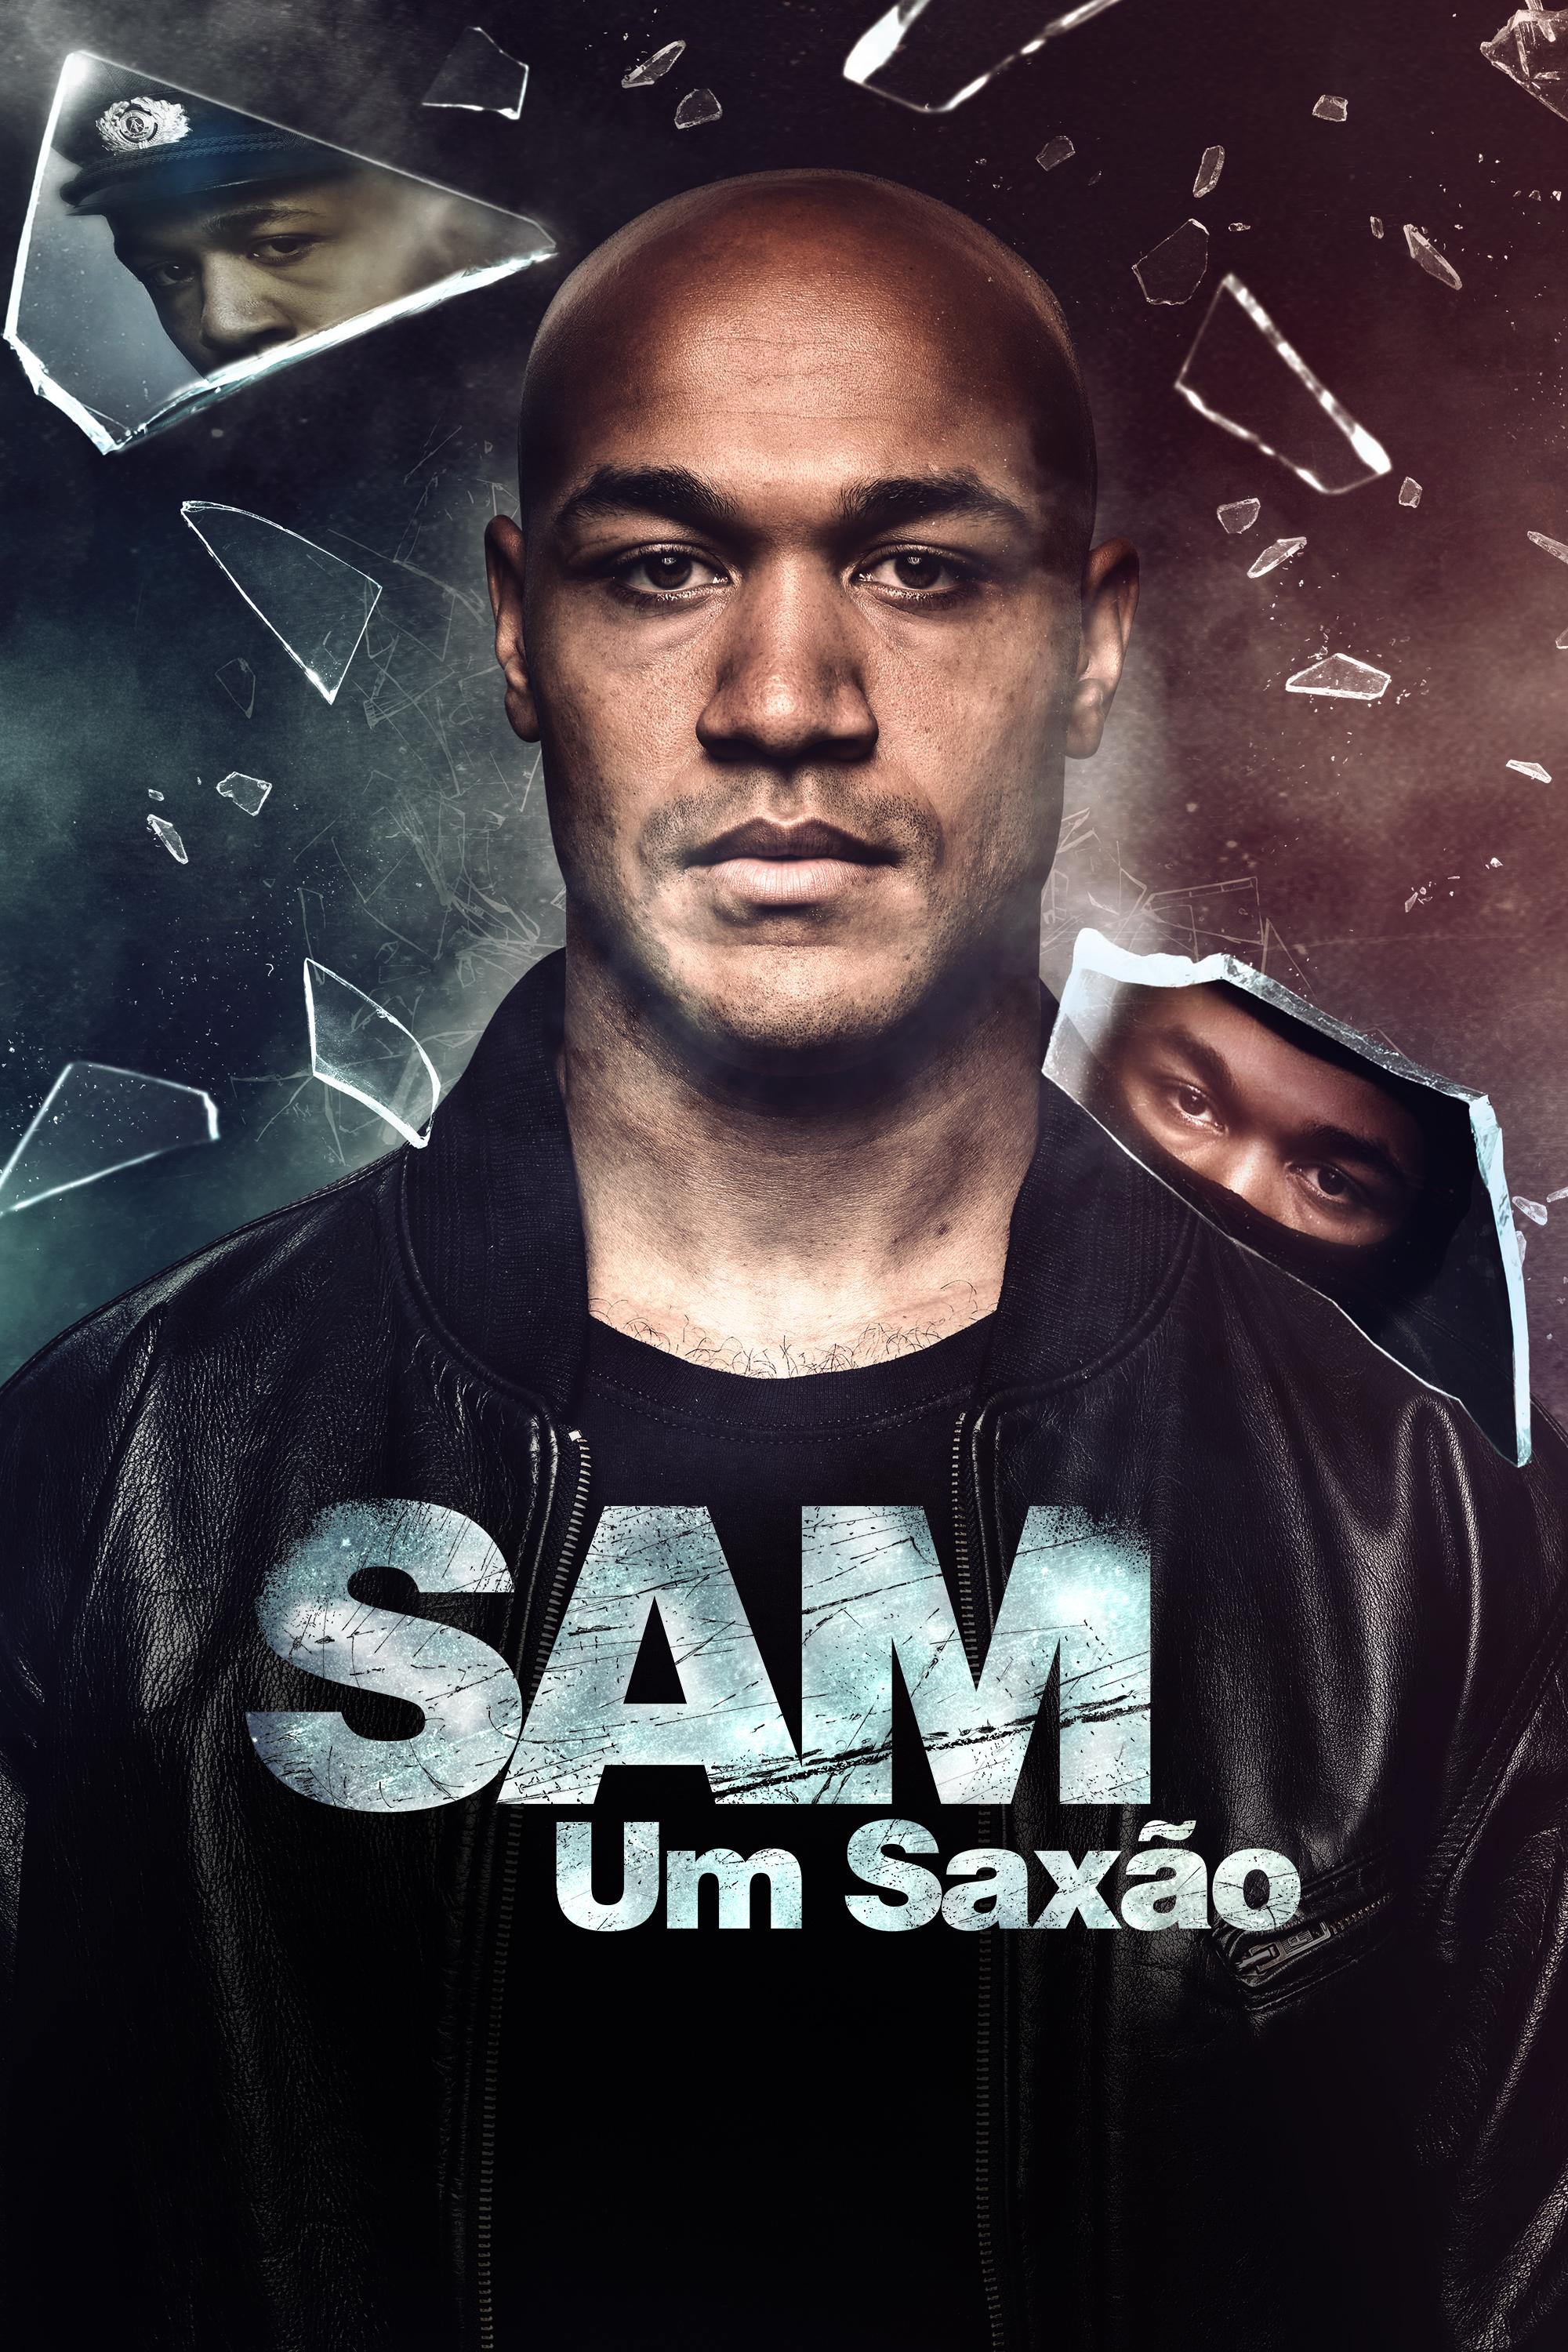 Постер фильма Sam: A Saxon